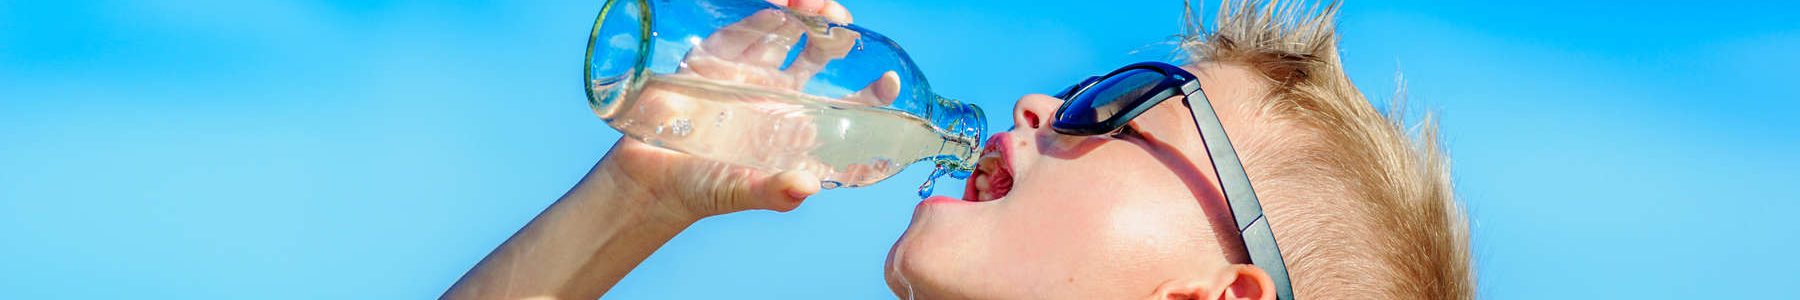 Junge trinkt STW-Wasser